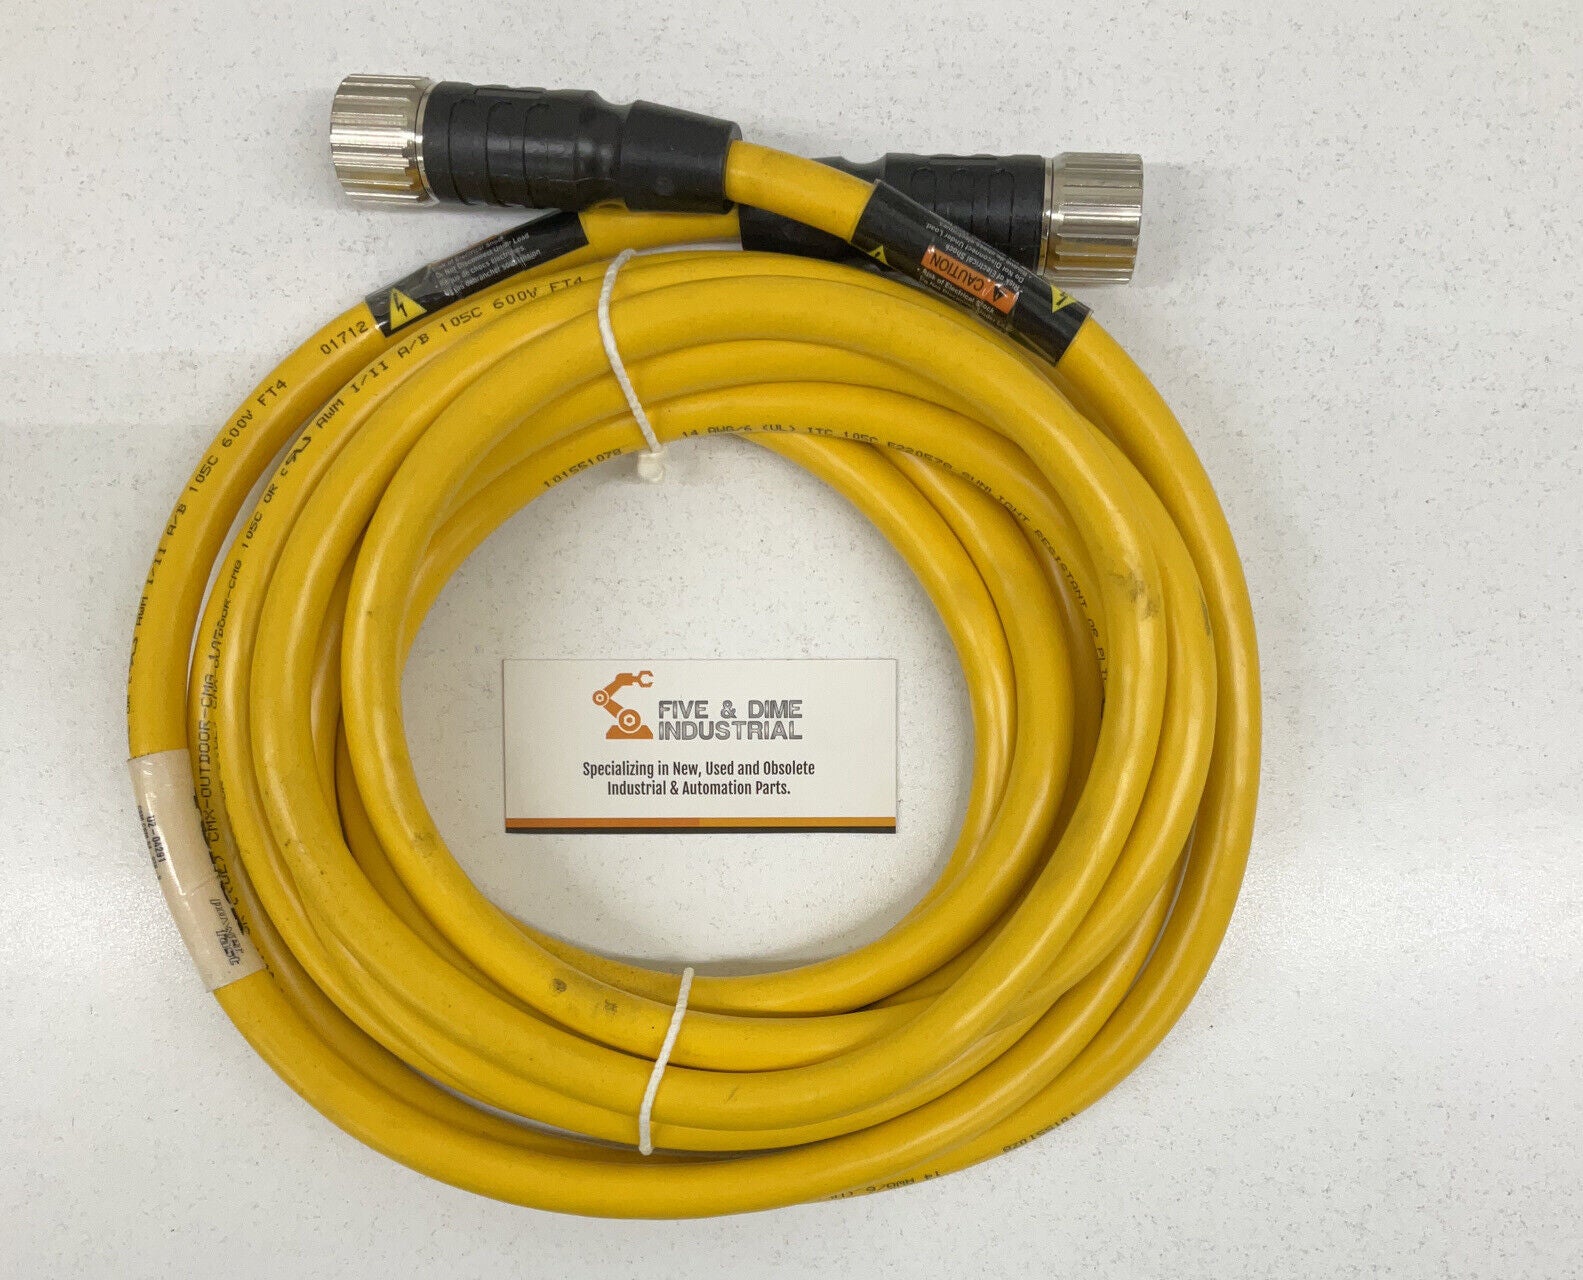 Turck CSM CKM 64-078-5 Power Fast Cable U2-04291 (CBL120)